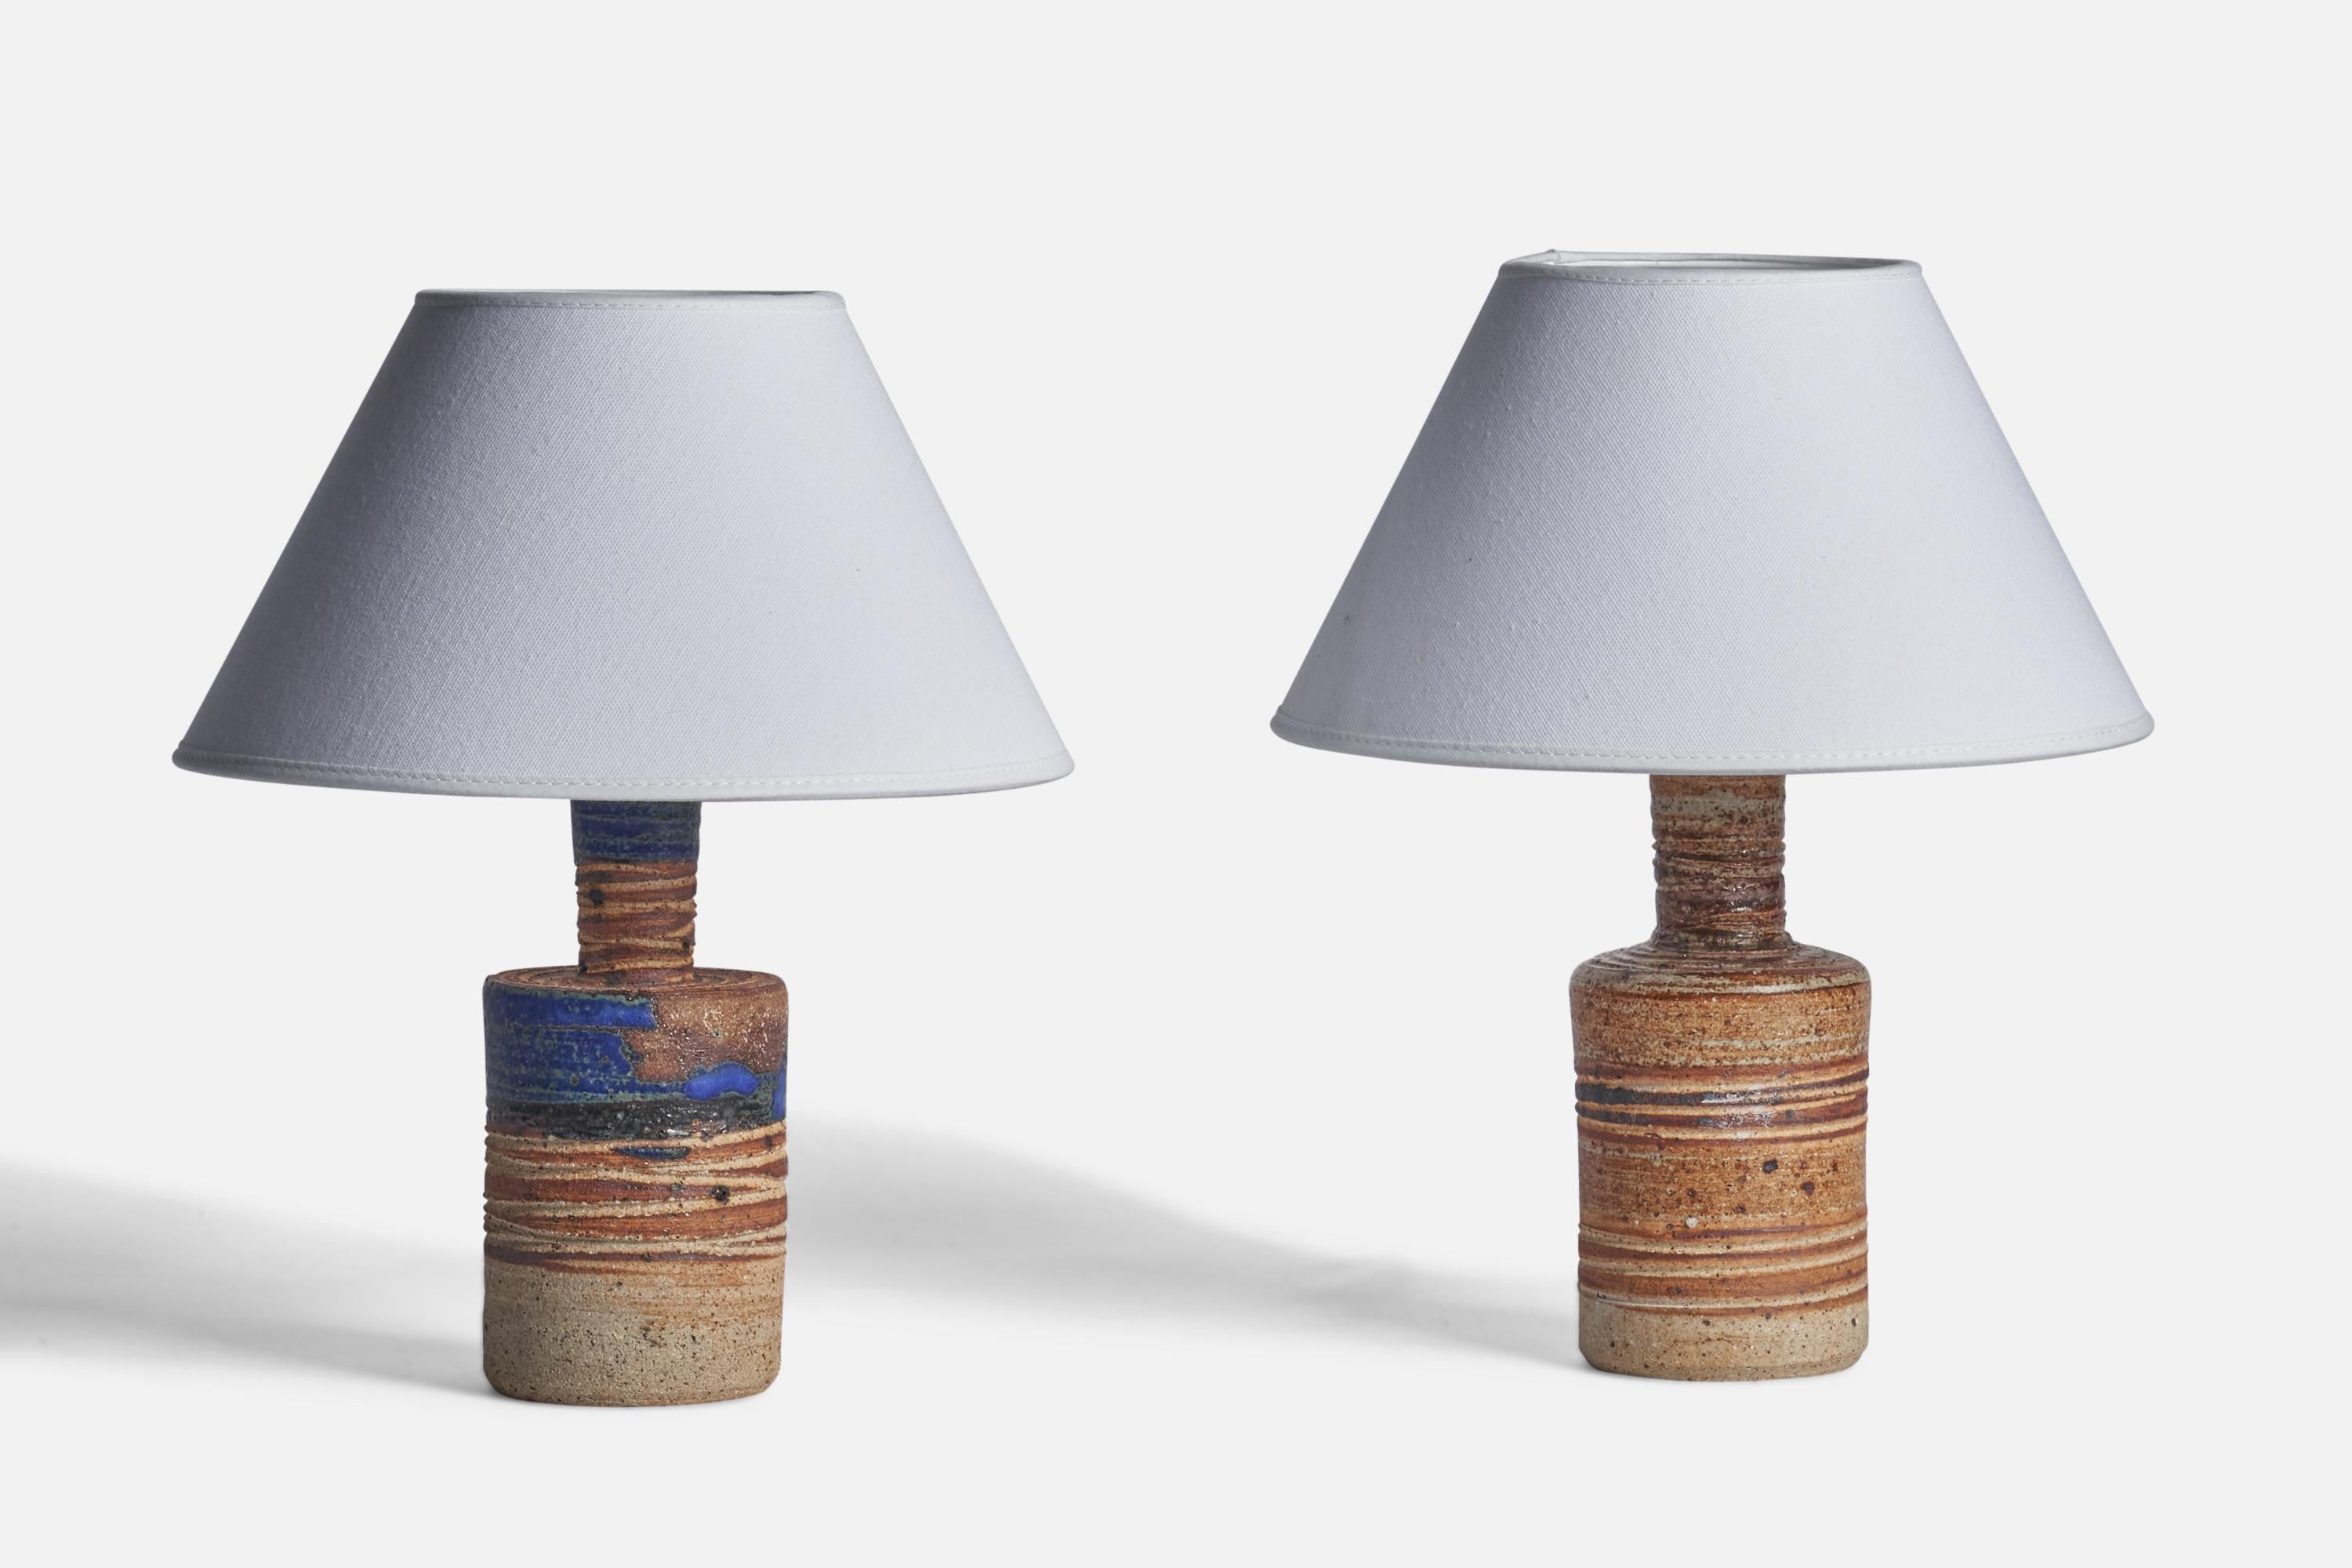 Paire de lampes de table en grès émaillé bleu et brun, conçues et produites par Tue Poulsen, Suède, années 1960.

Dimensions de la lampe (pouces) : 9.15